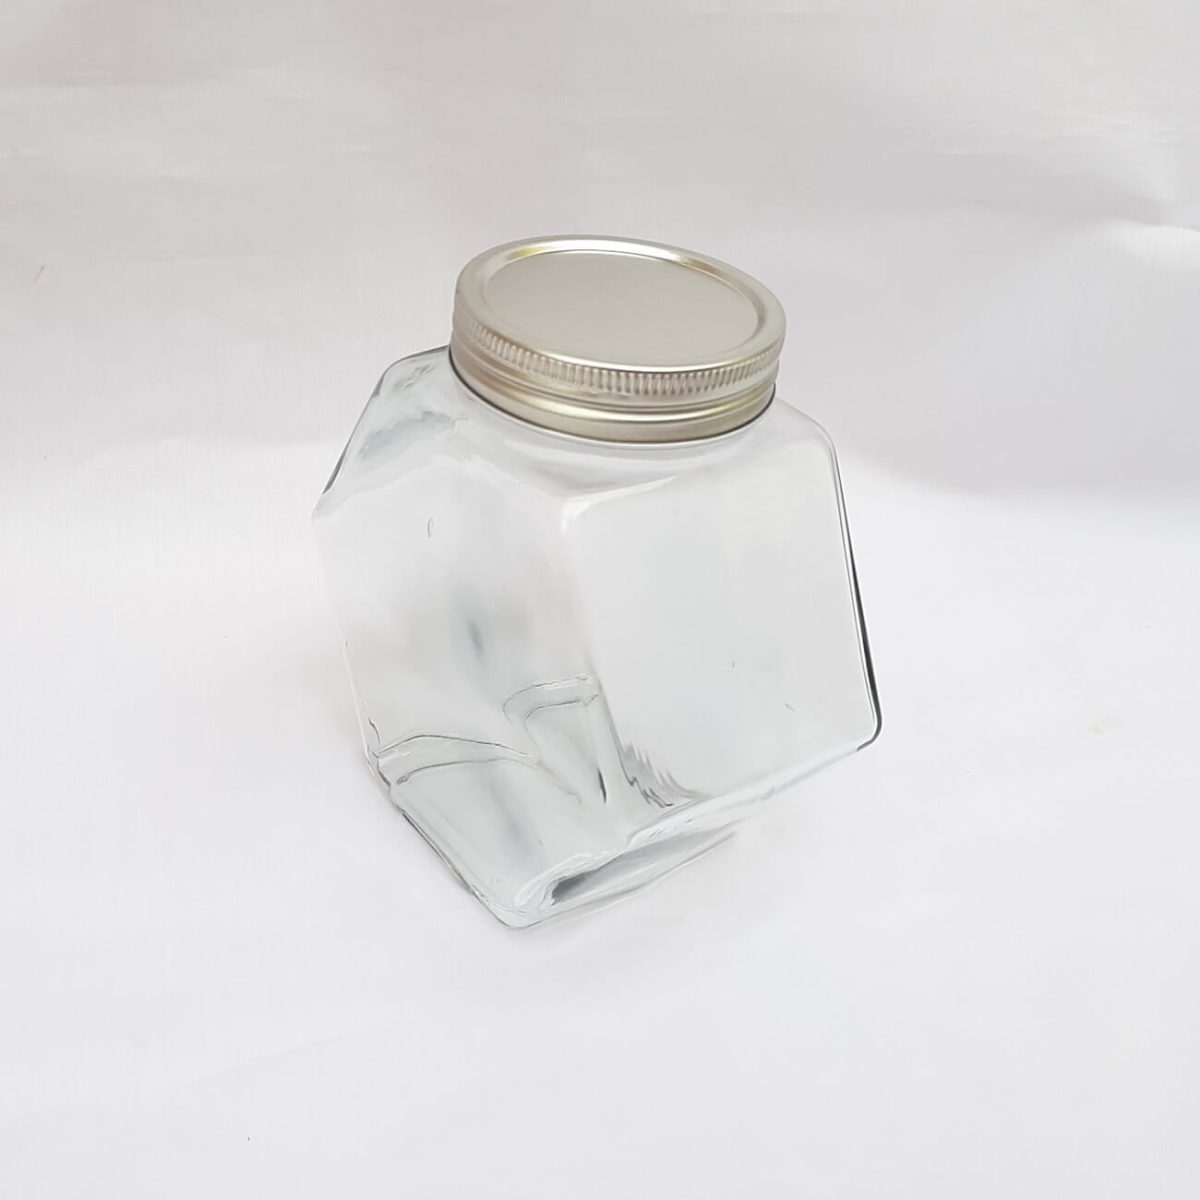 جار شیشه عسل یک کیلو کندو درب کانتینری